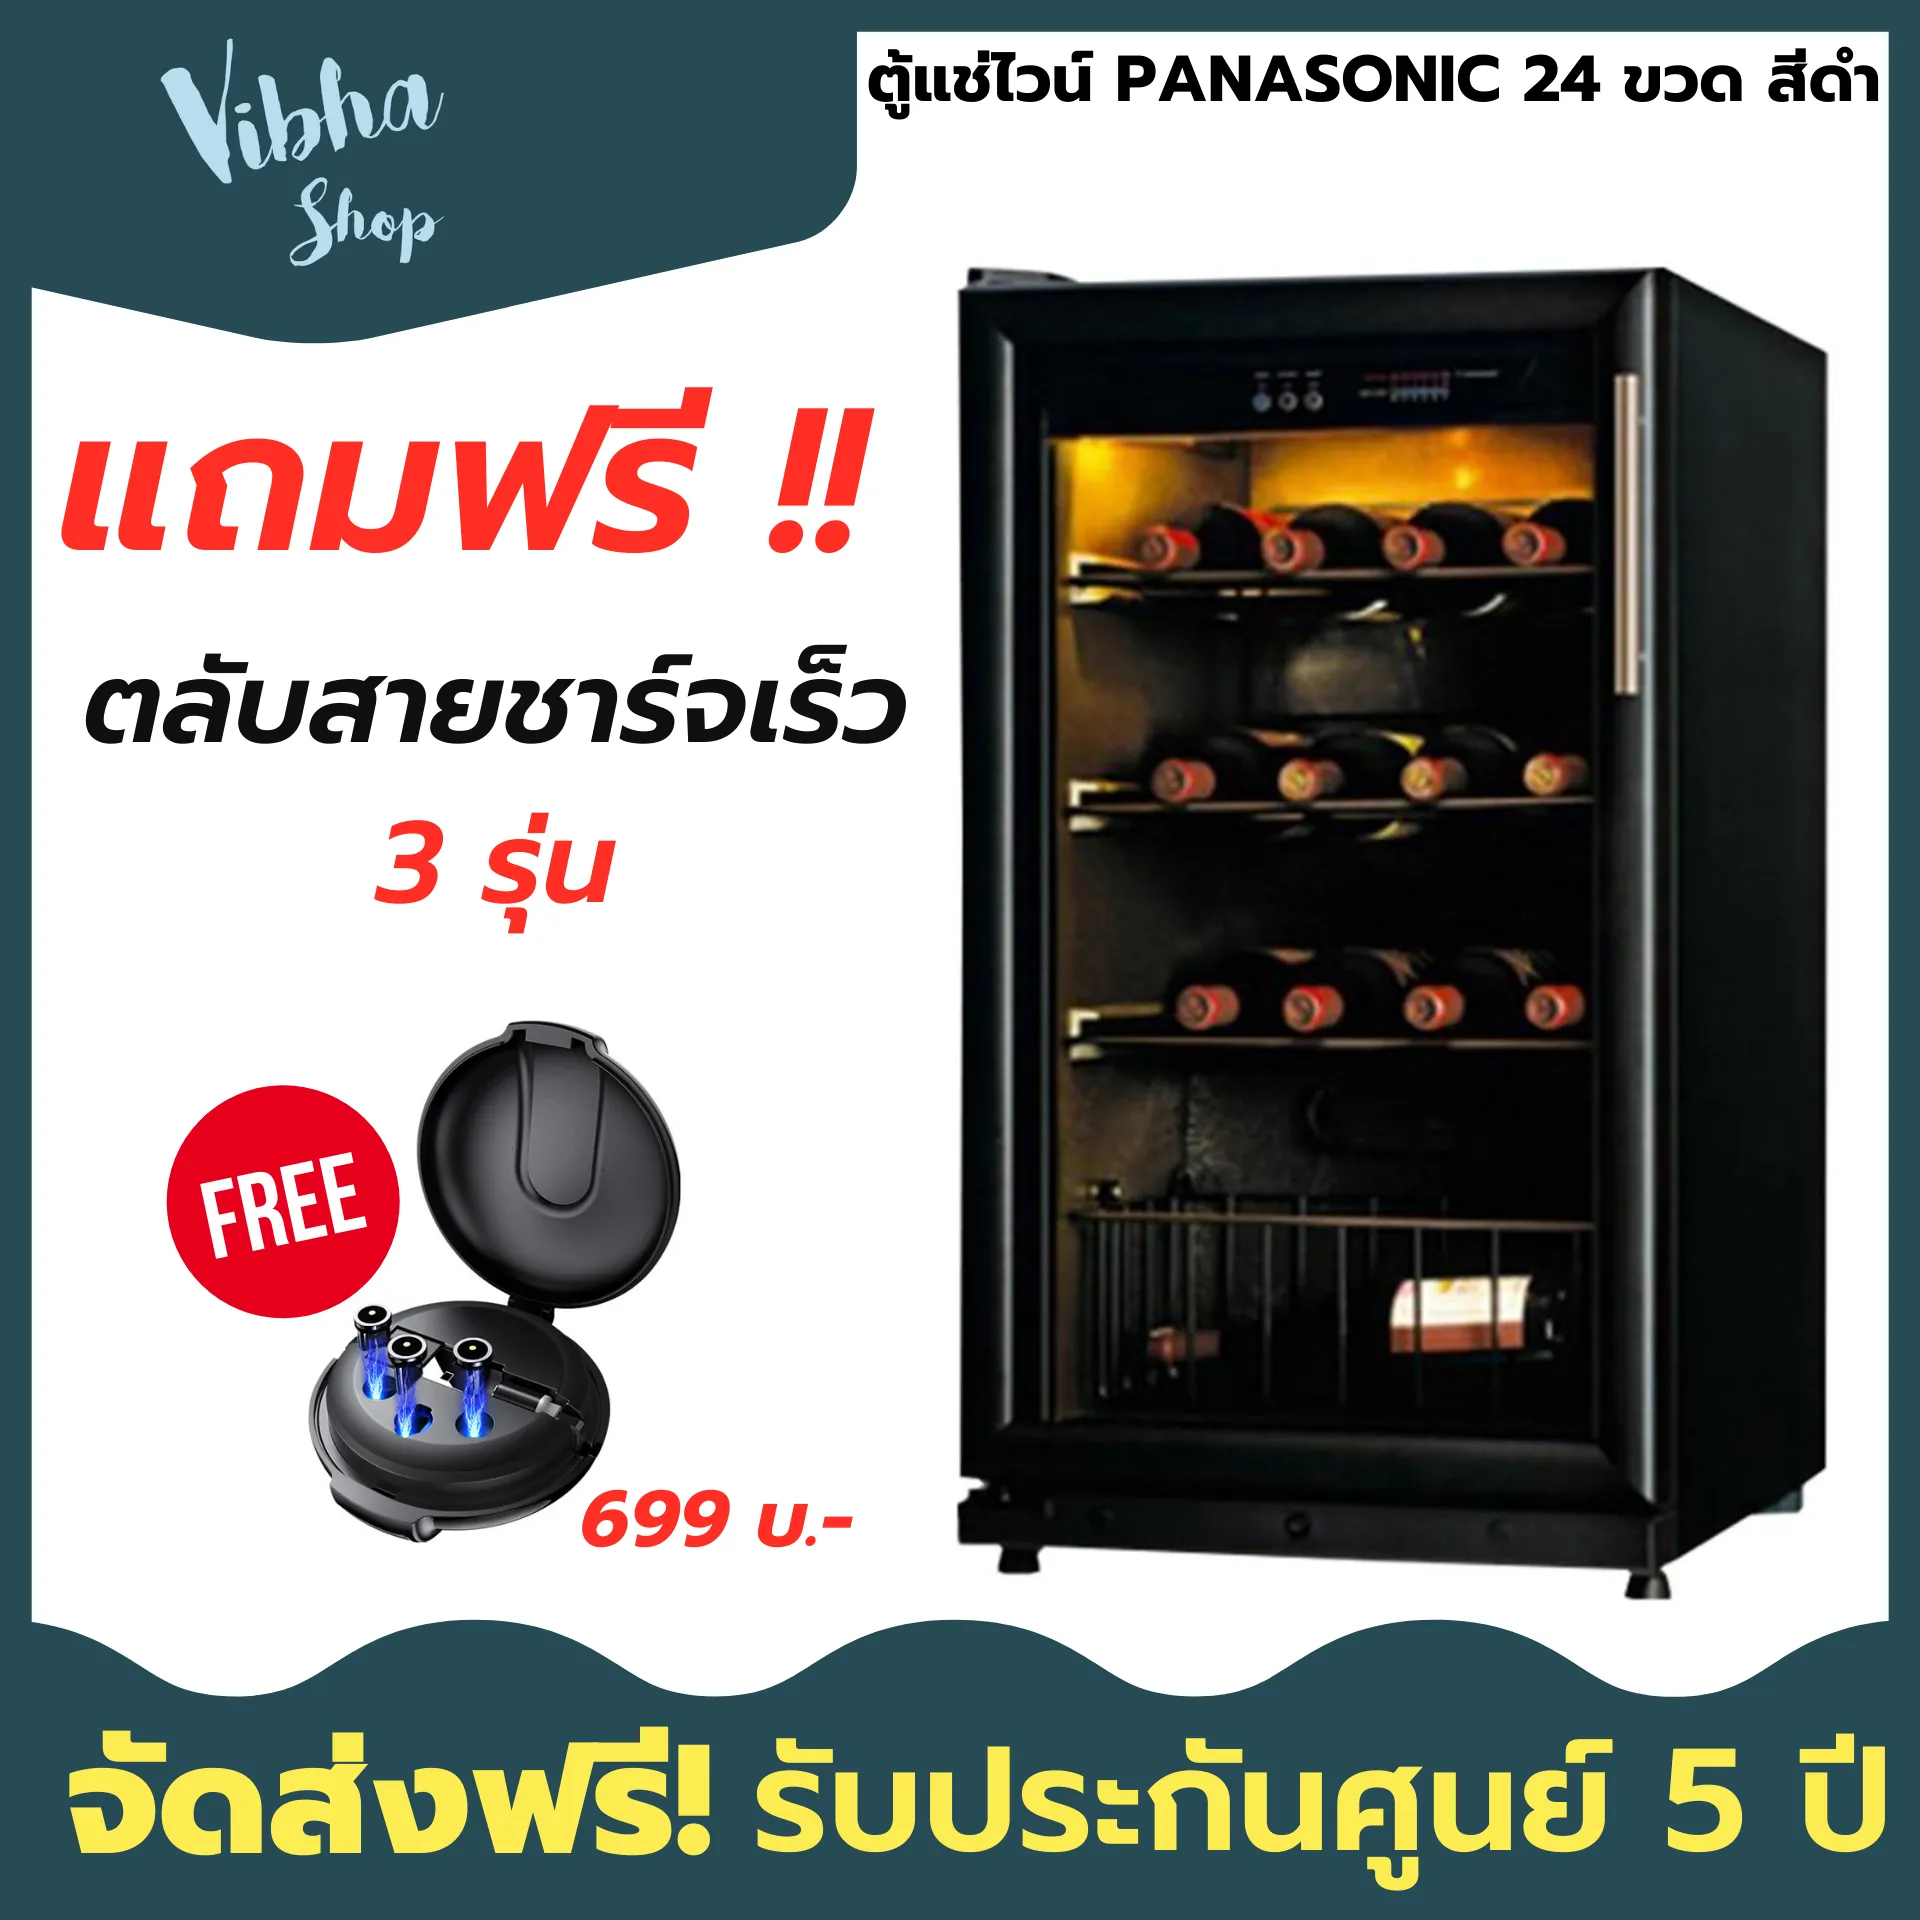 (ส่งฟรี) ตู้แช่ไวน์ PANASONIC  24 ขวด สีดำ ตู้แช่ไวน์ ตู้แช่เย็น ตู้แช่แข็ง ตู้แช่ ของแท้ ประกัน 5ปี Vibha shop